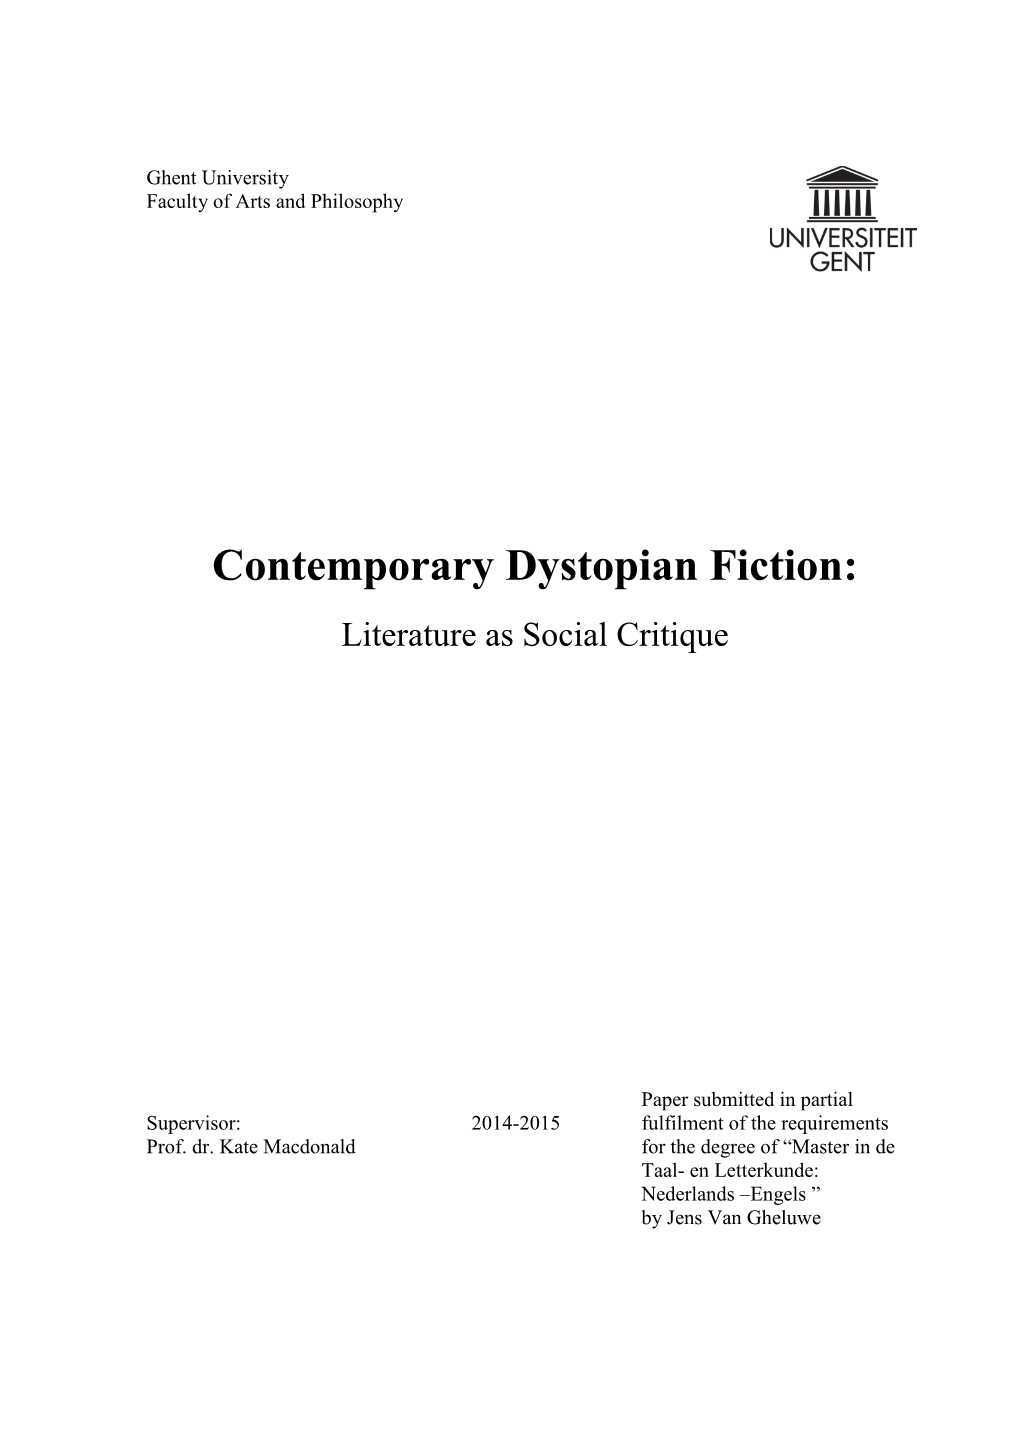 Contemporary Dystopian Fiction: Literature As Social Critique